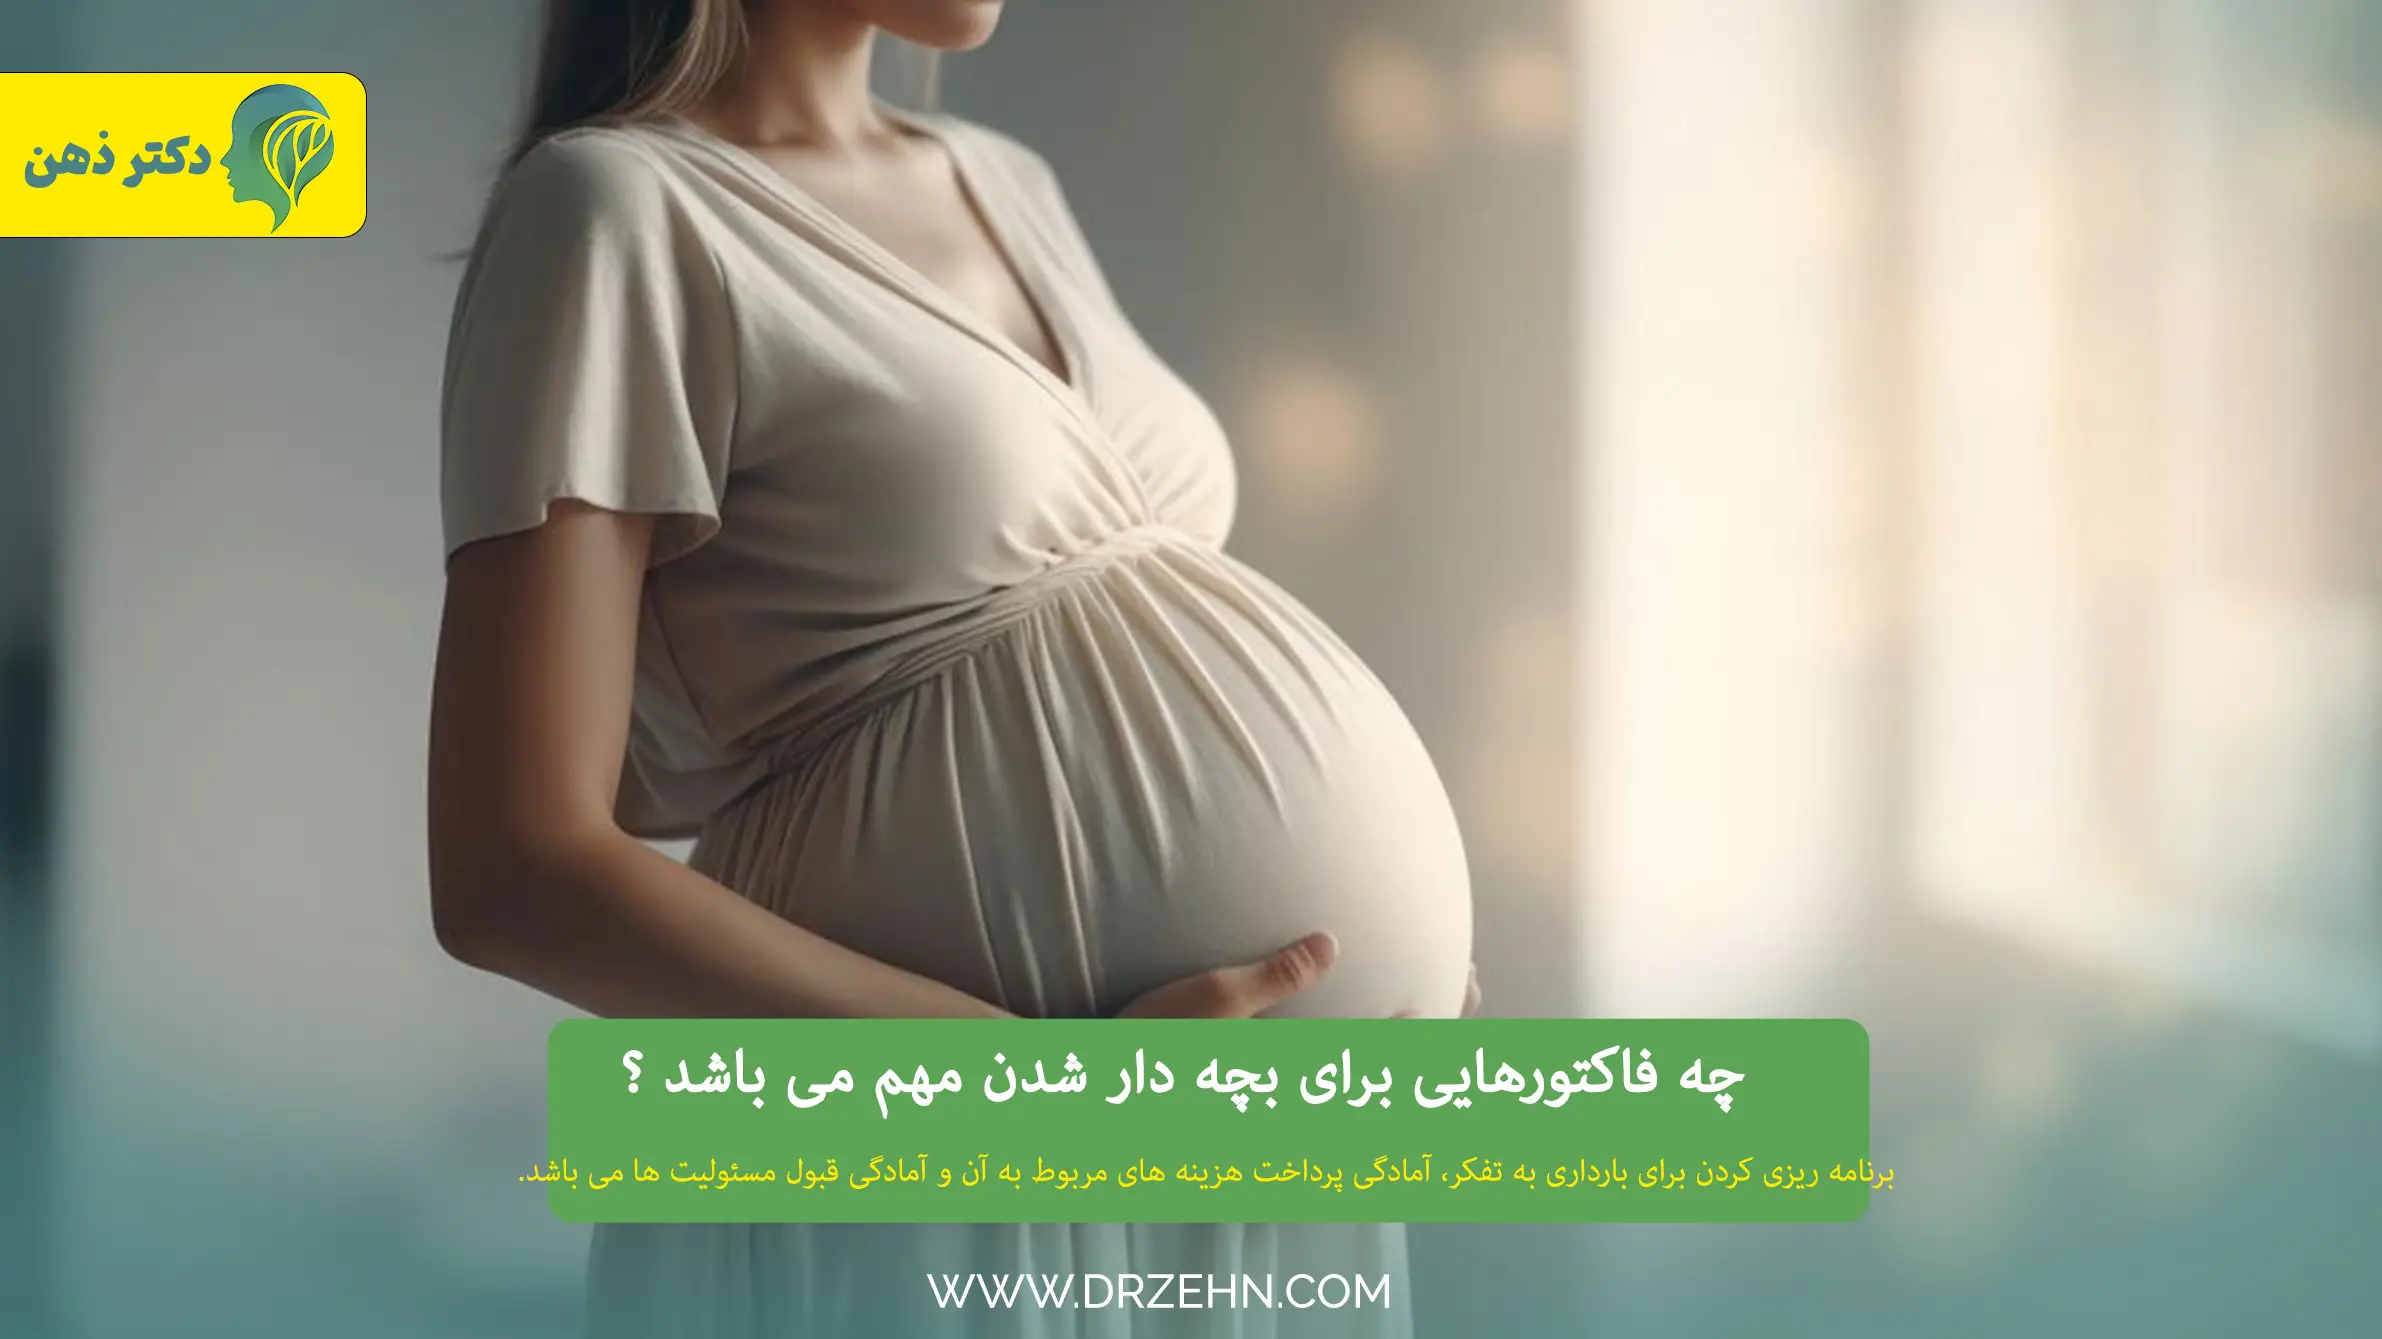 فاکتورهای مهم برای بارداری و بچه دار شدن